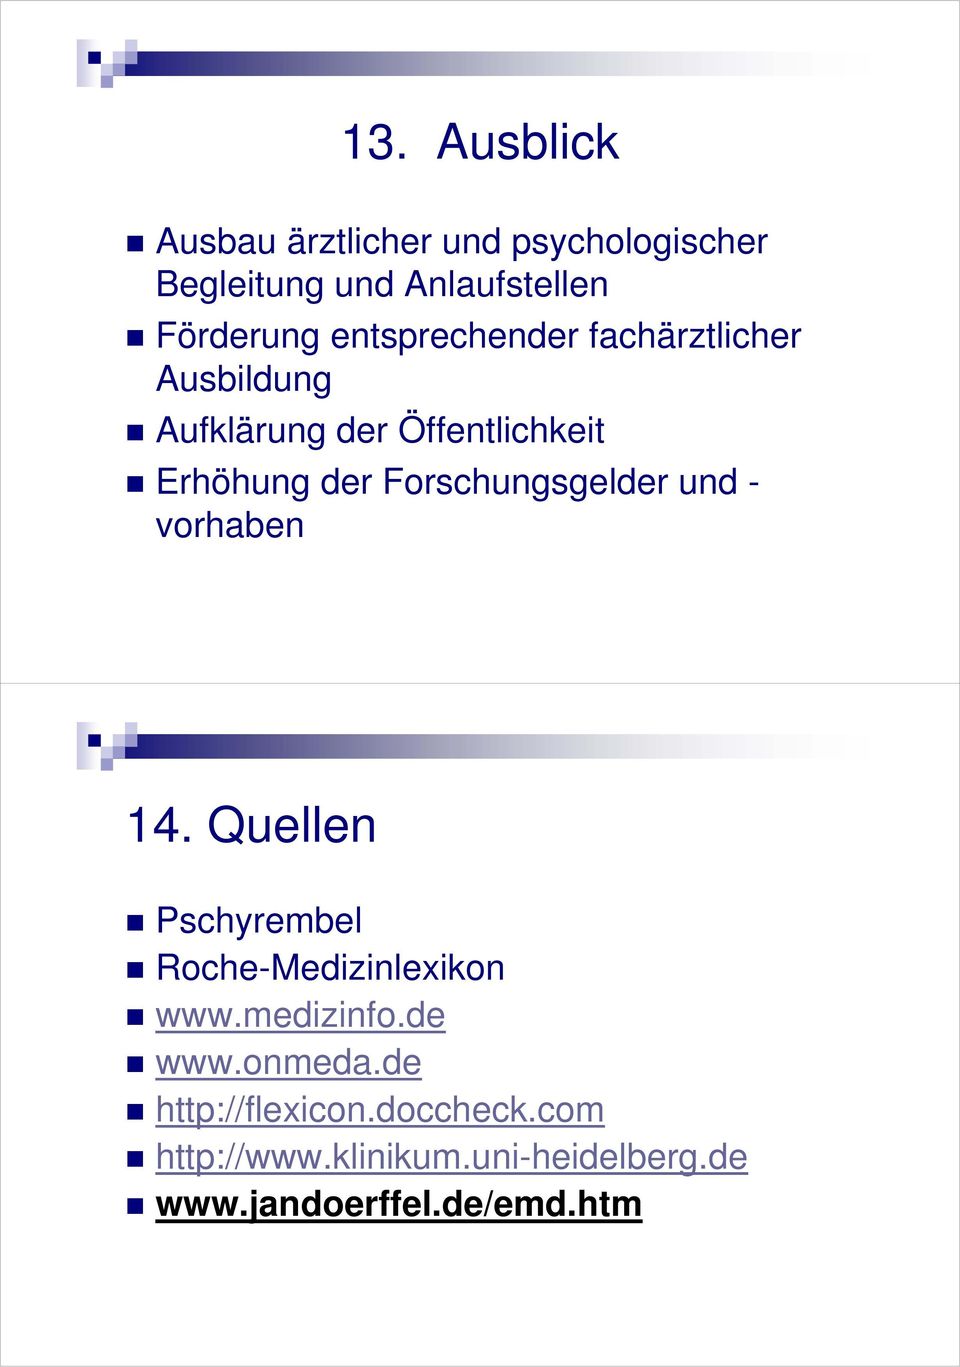 Forschungsgelder und - vorhaben 14. Quellen Pschyrembel Roche-Medizinlexikon www.medizinfo.